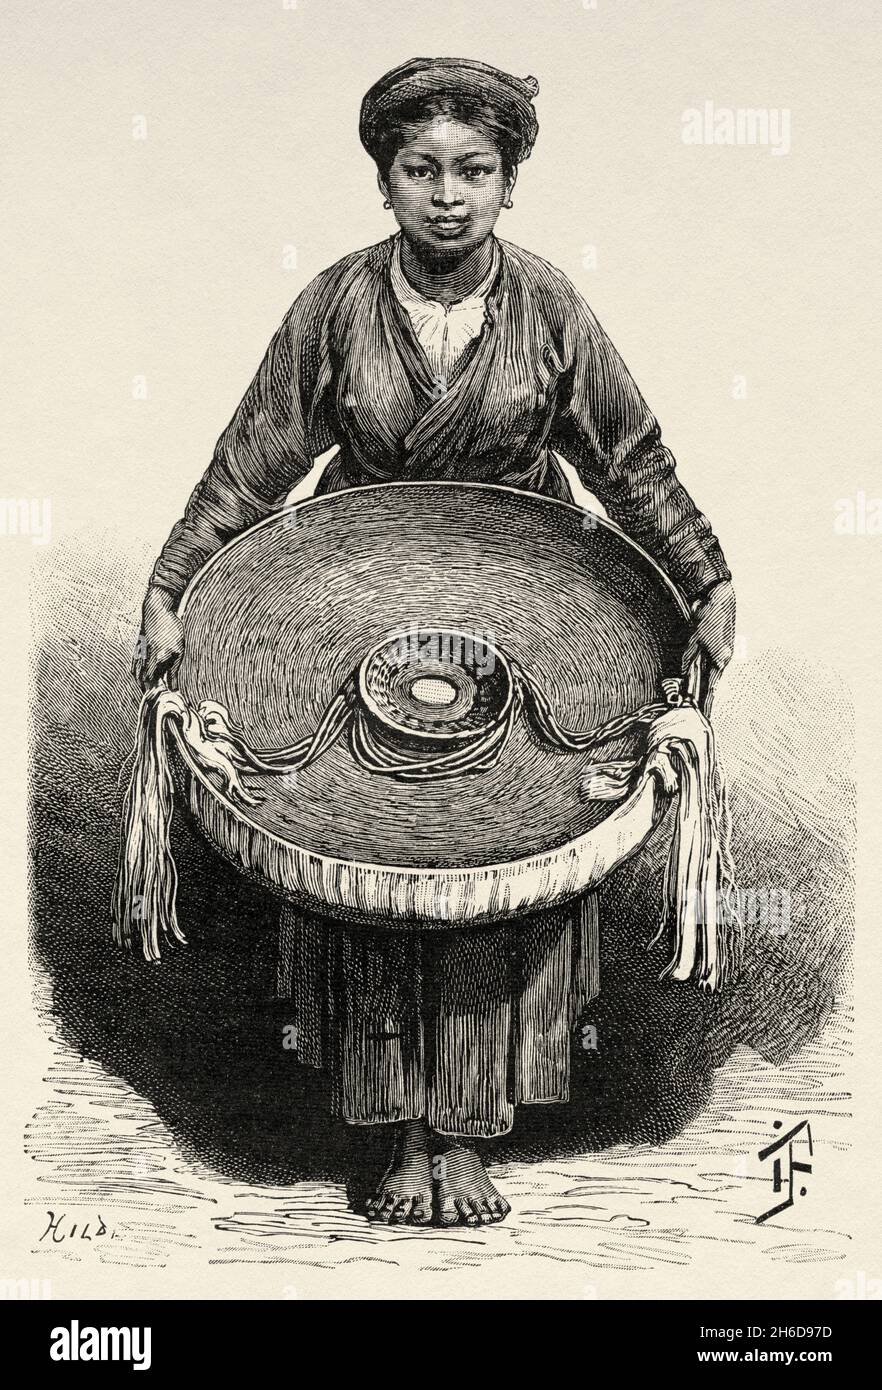 Hanoi femme et à l'intérieur d'un chapeau Tonkinese, Vietnam.Asie.Illustration gravée du XIXe Siècle Une campagne à Tonkin de Charles Edouard Hocquard du Tour du monde 1889 Banque D'Images